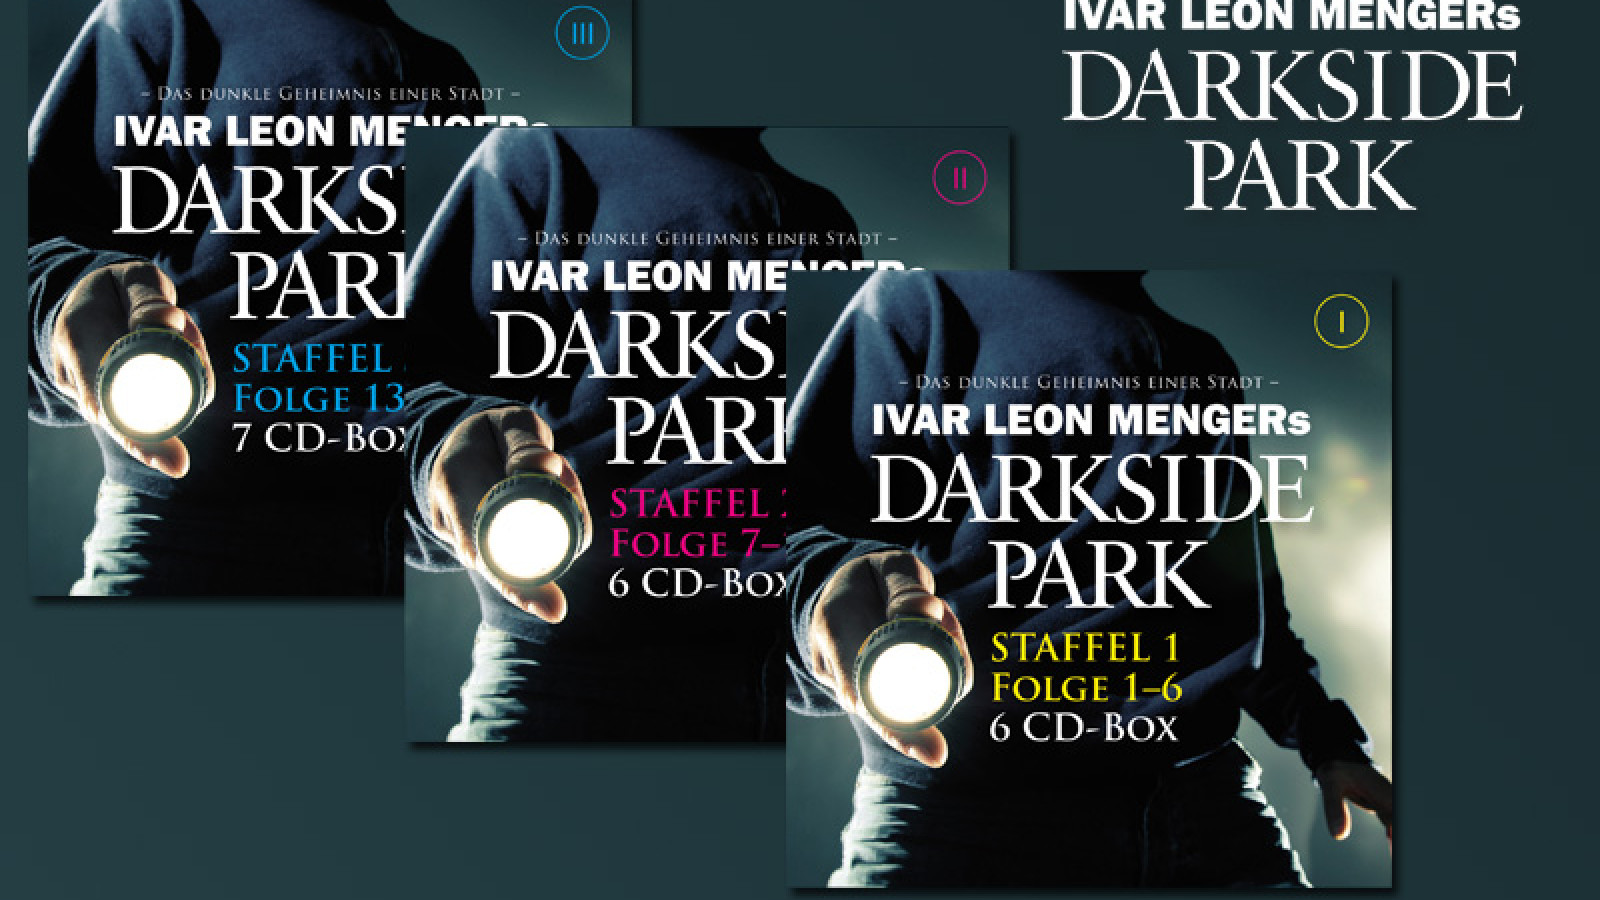 Ausgezeichnete Thriller-Serie "Darkside Park" wieder erhältlich